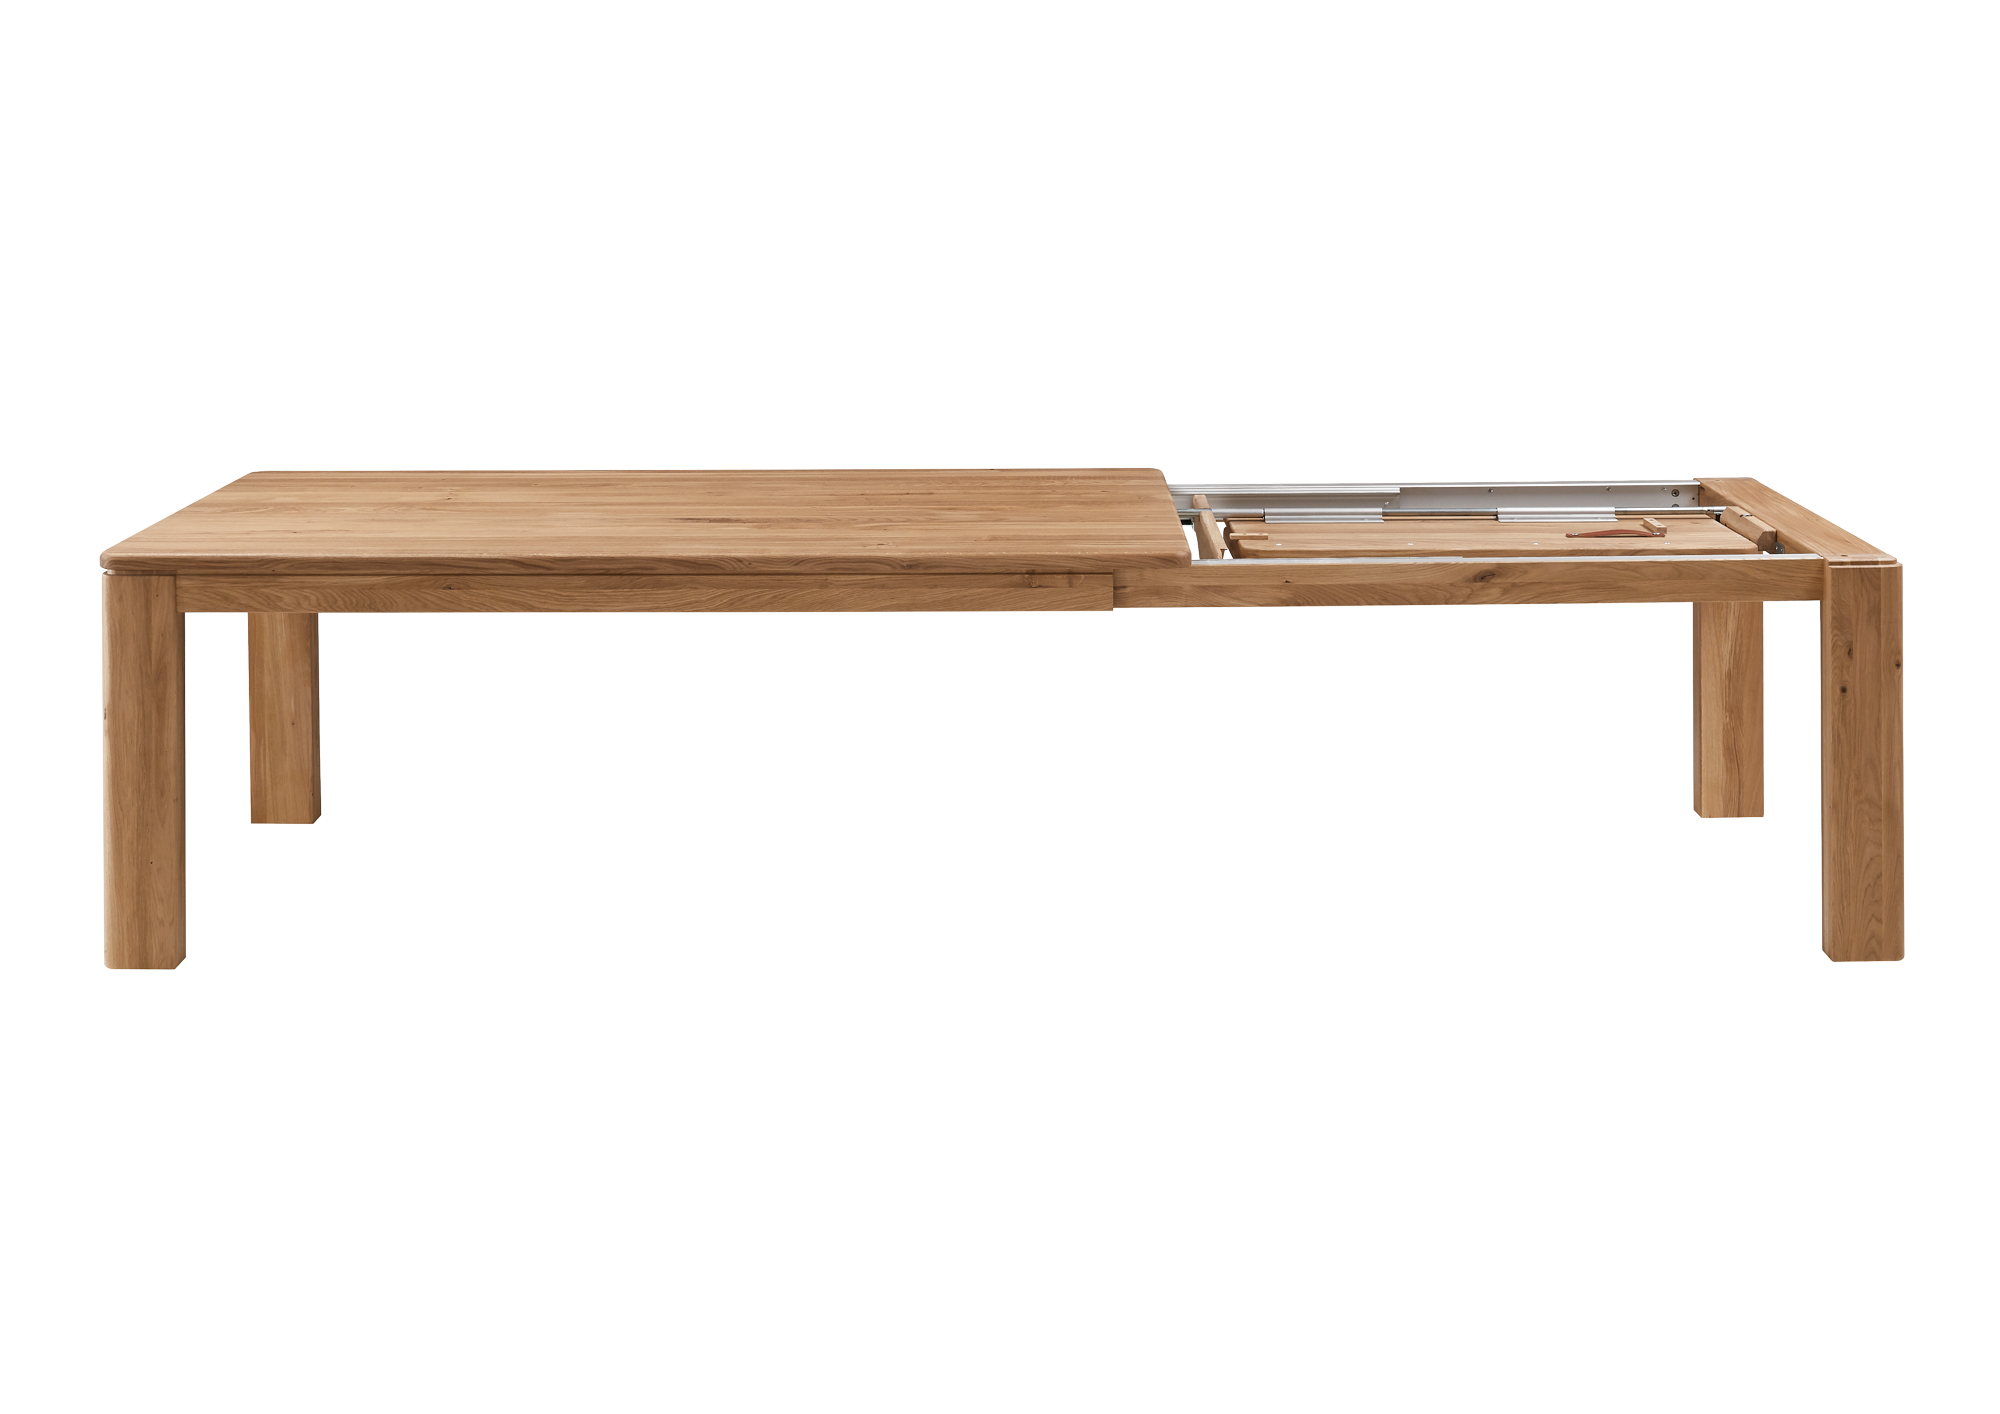 Abbildung Massivholztisch, Modellname TS 3090 soft